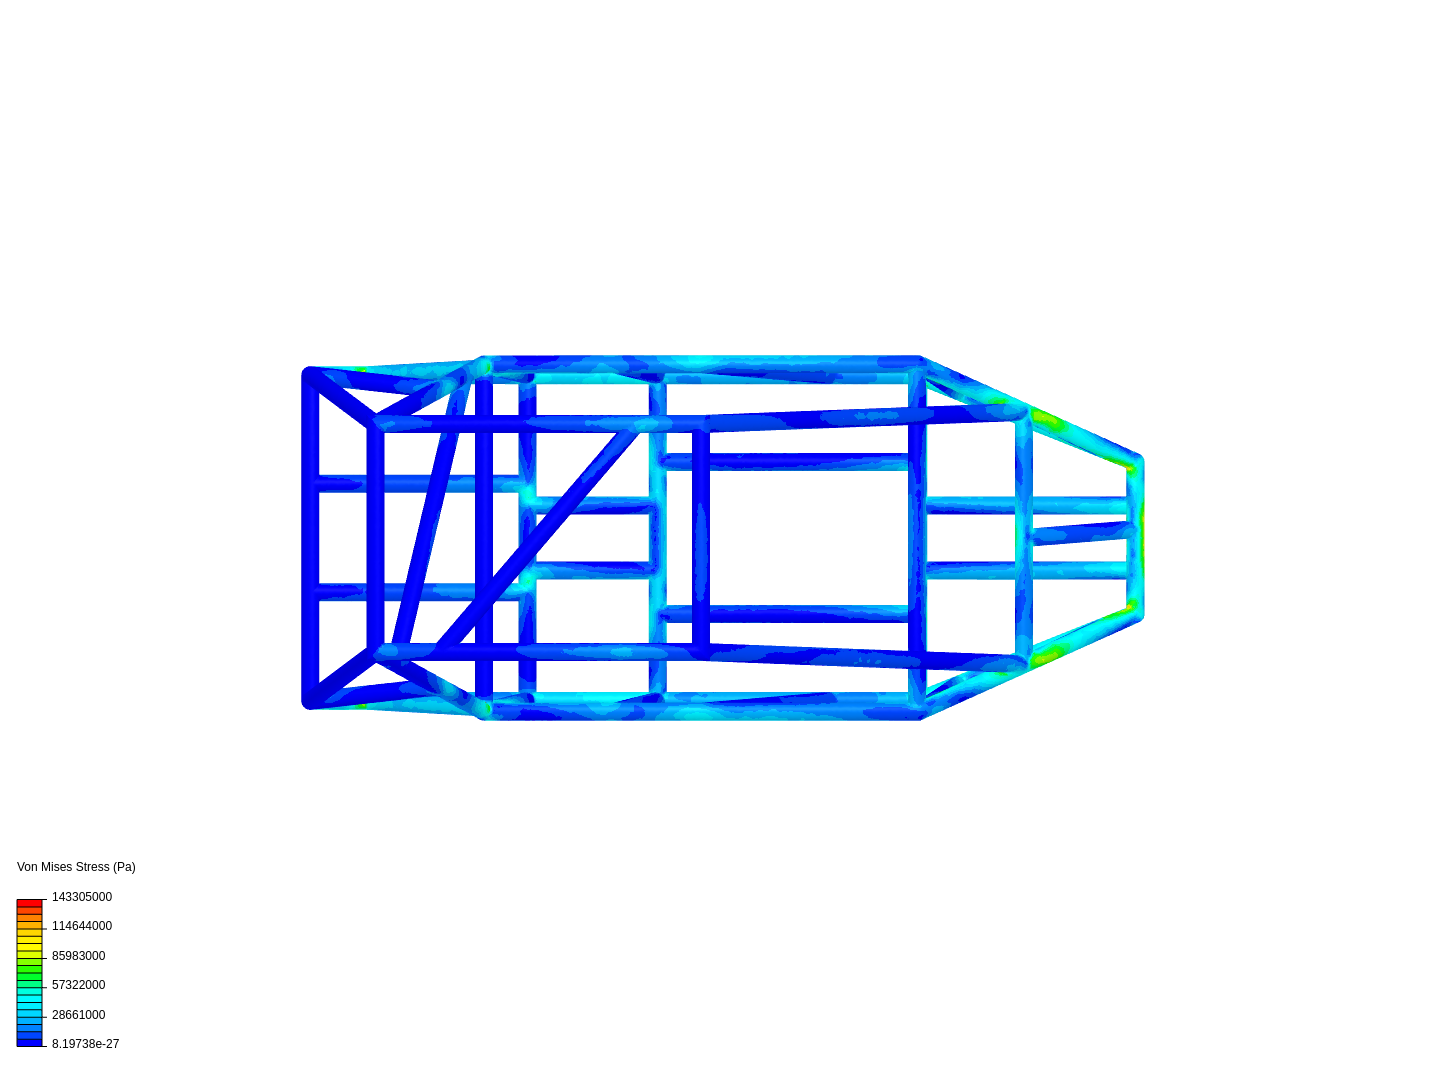 tubular chassis image